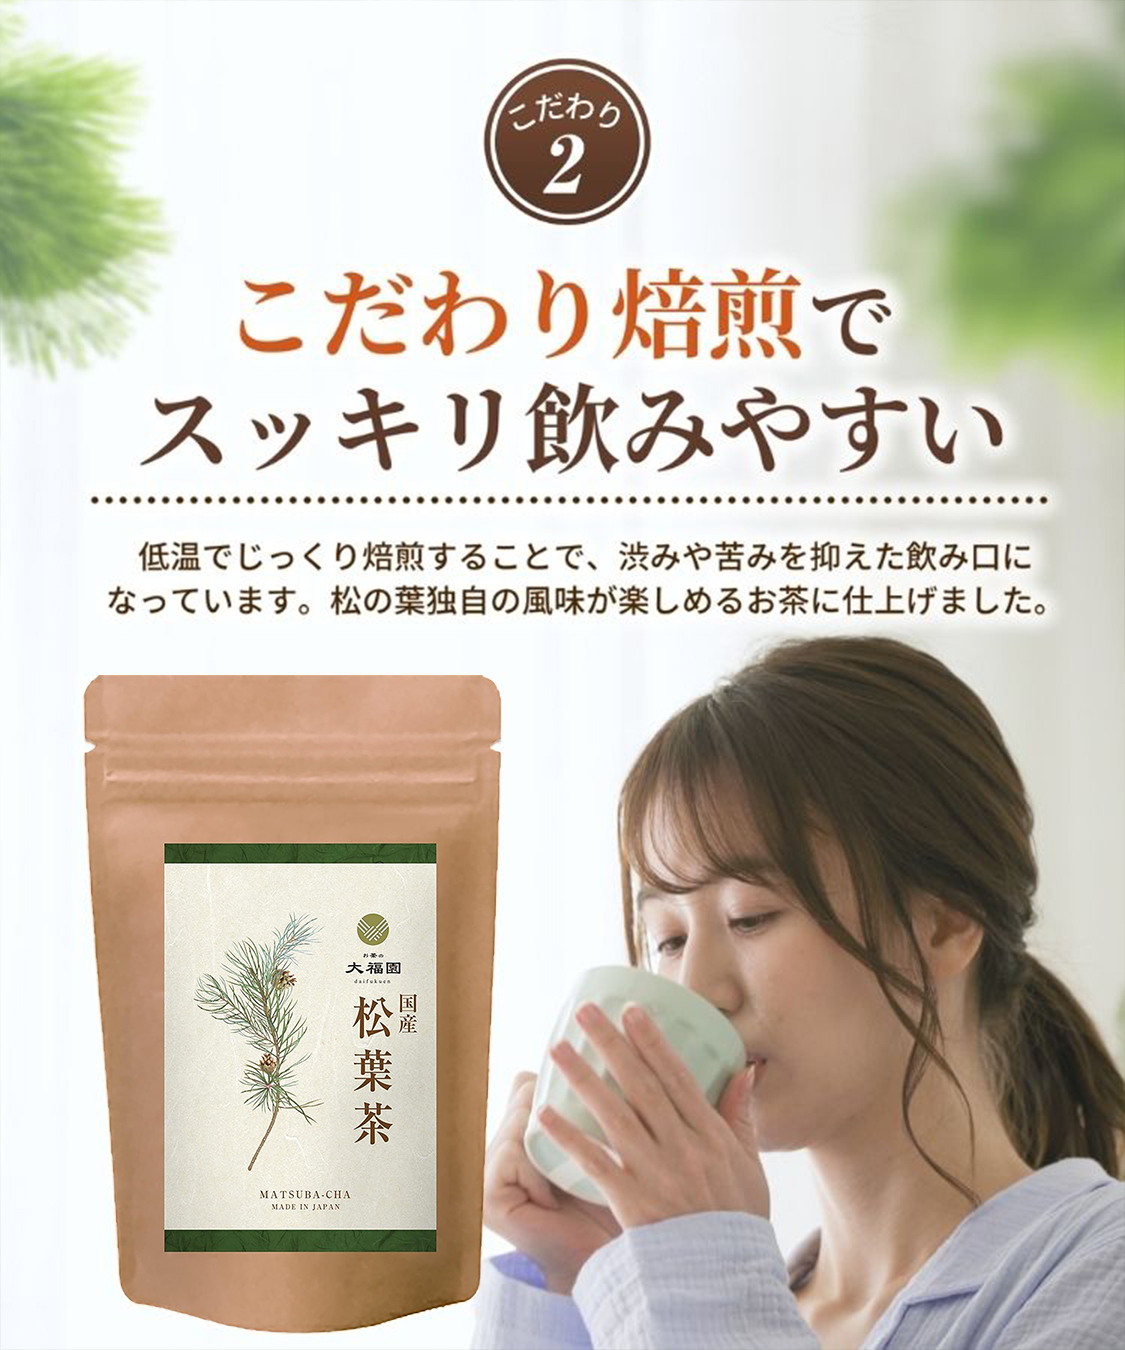 松葉茶 国産 1g×45包 ティーバッグ 放射能検査済 赤松 松の葉茶 日本 